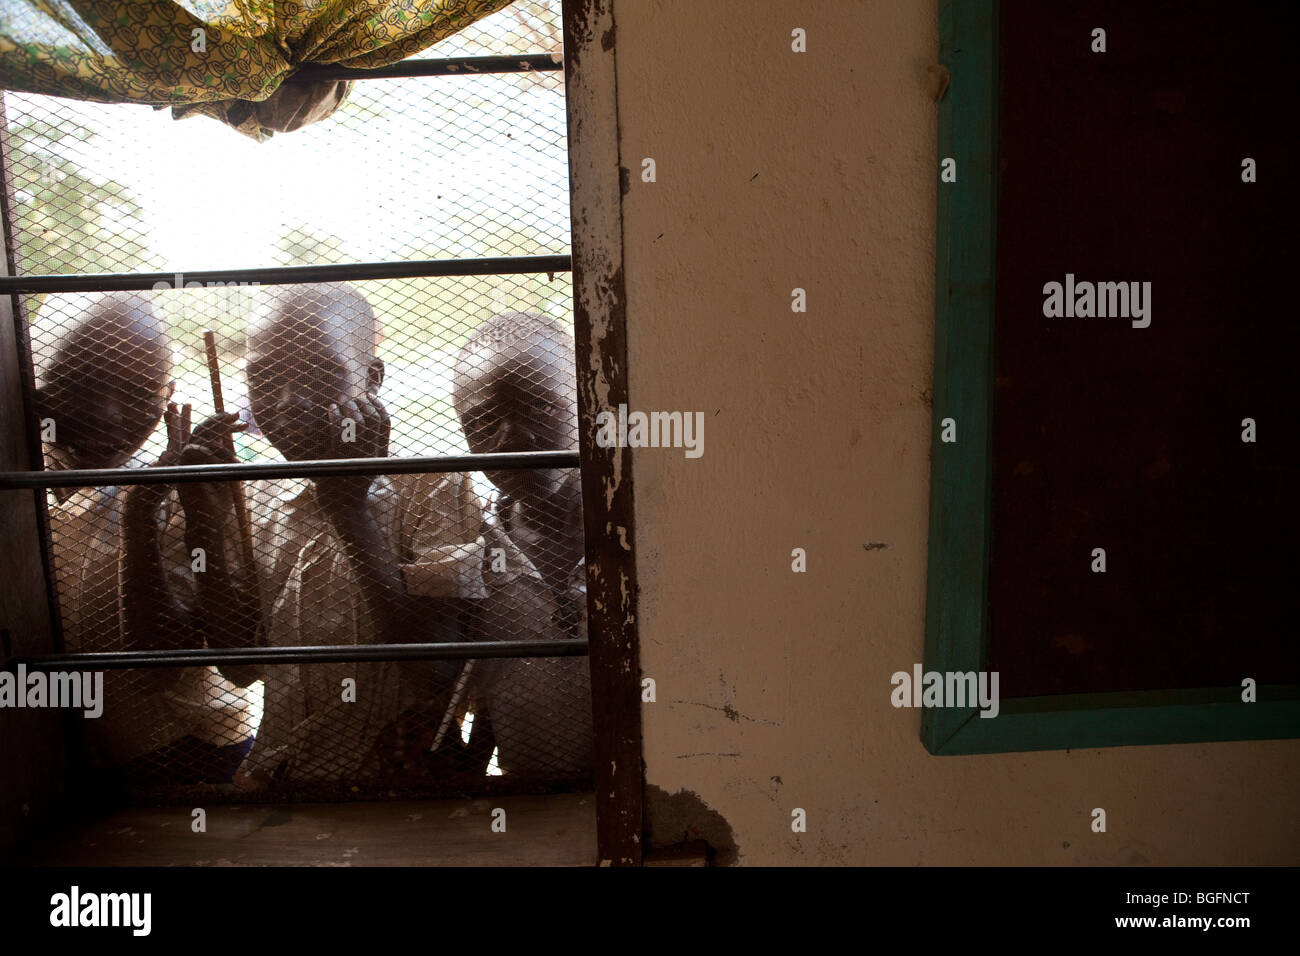 Schuljungen schauen durch die Fenster einer medizinischen Krankenstation in Tansania: Manyara Region, Simanjiro Bezirk Kilombero Dorf. Stockfoto